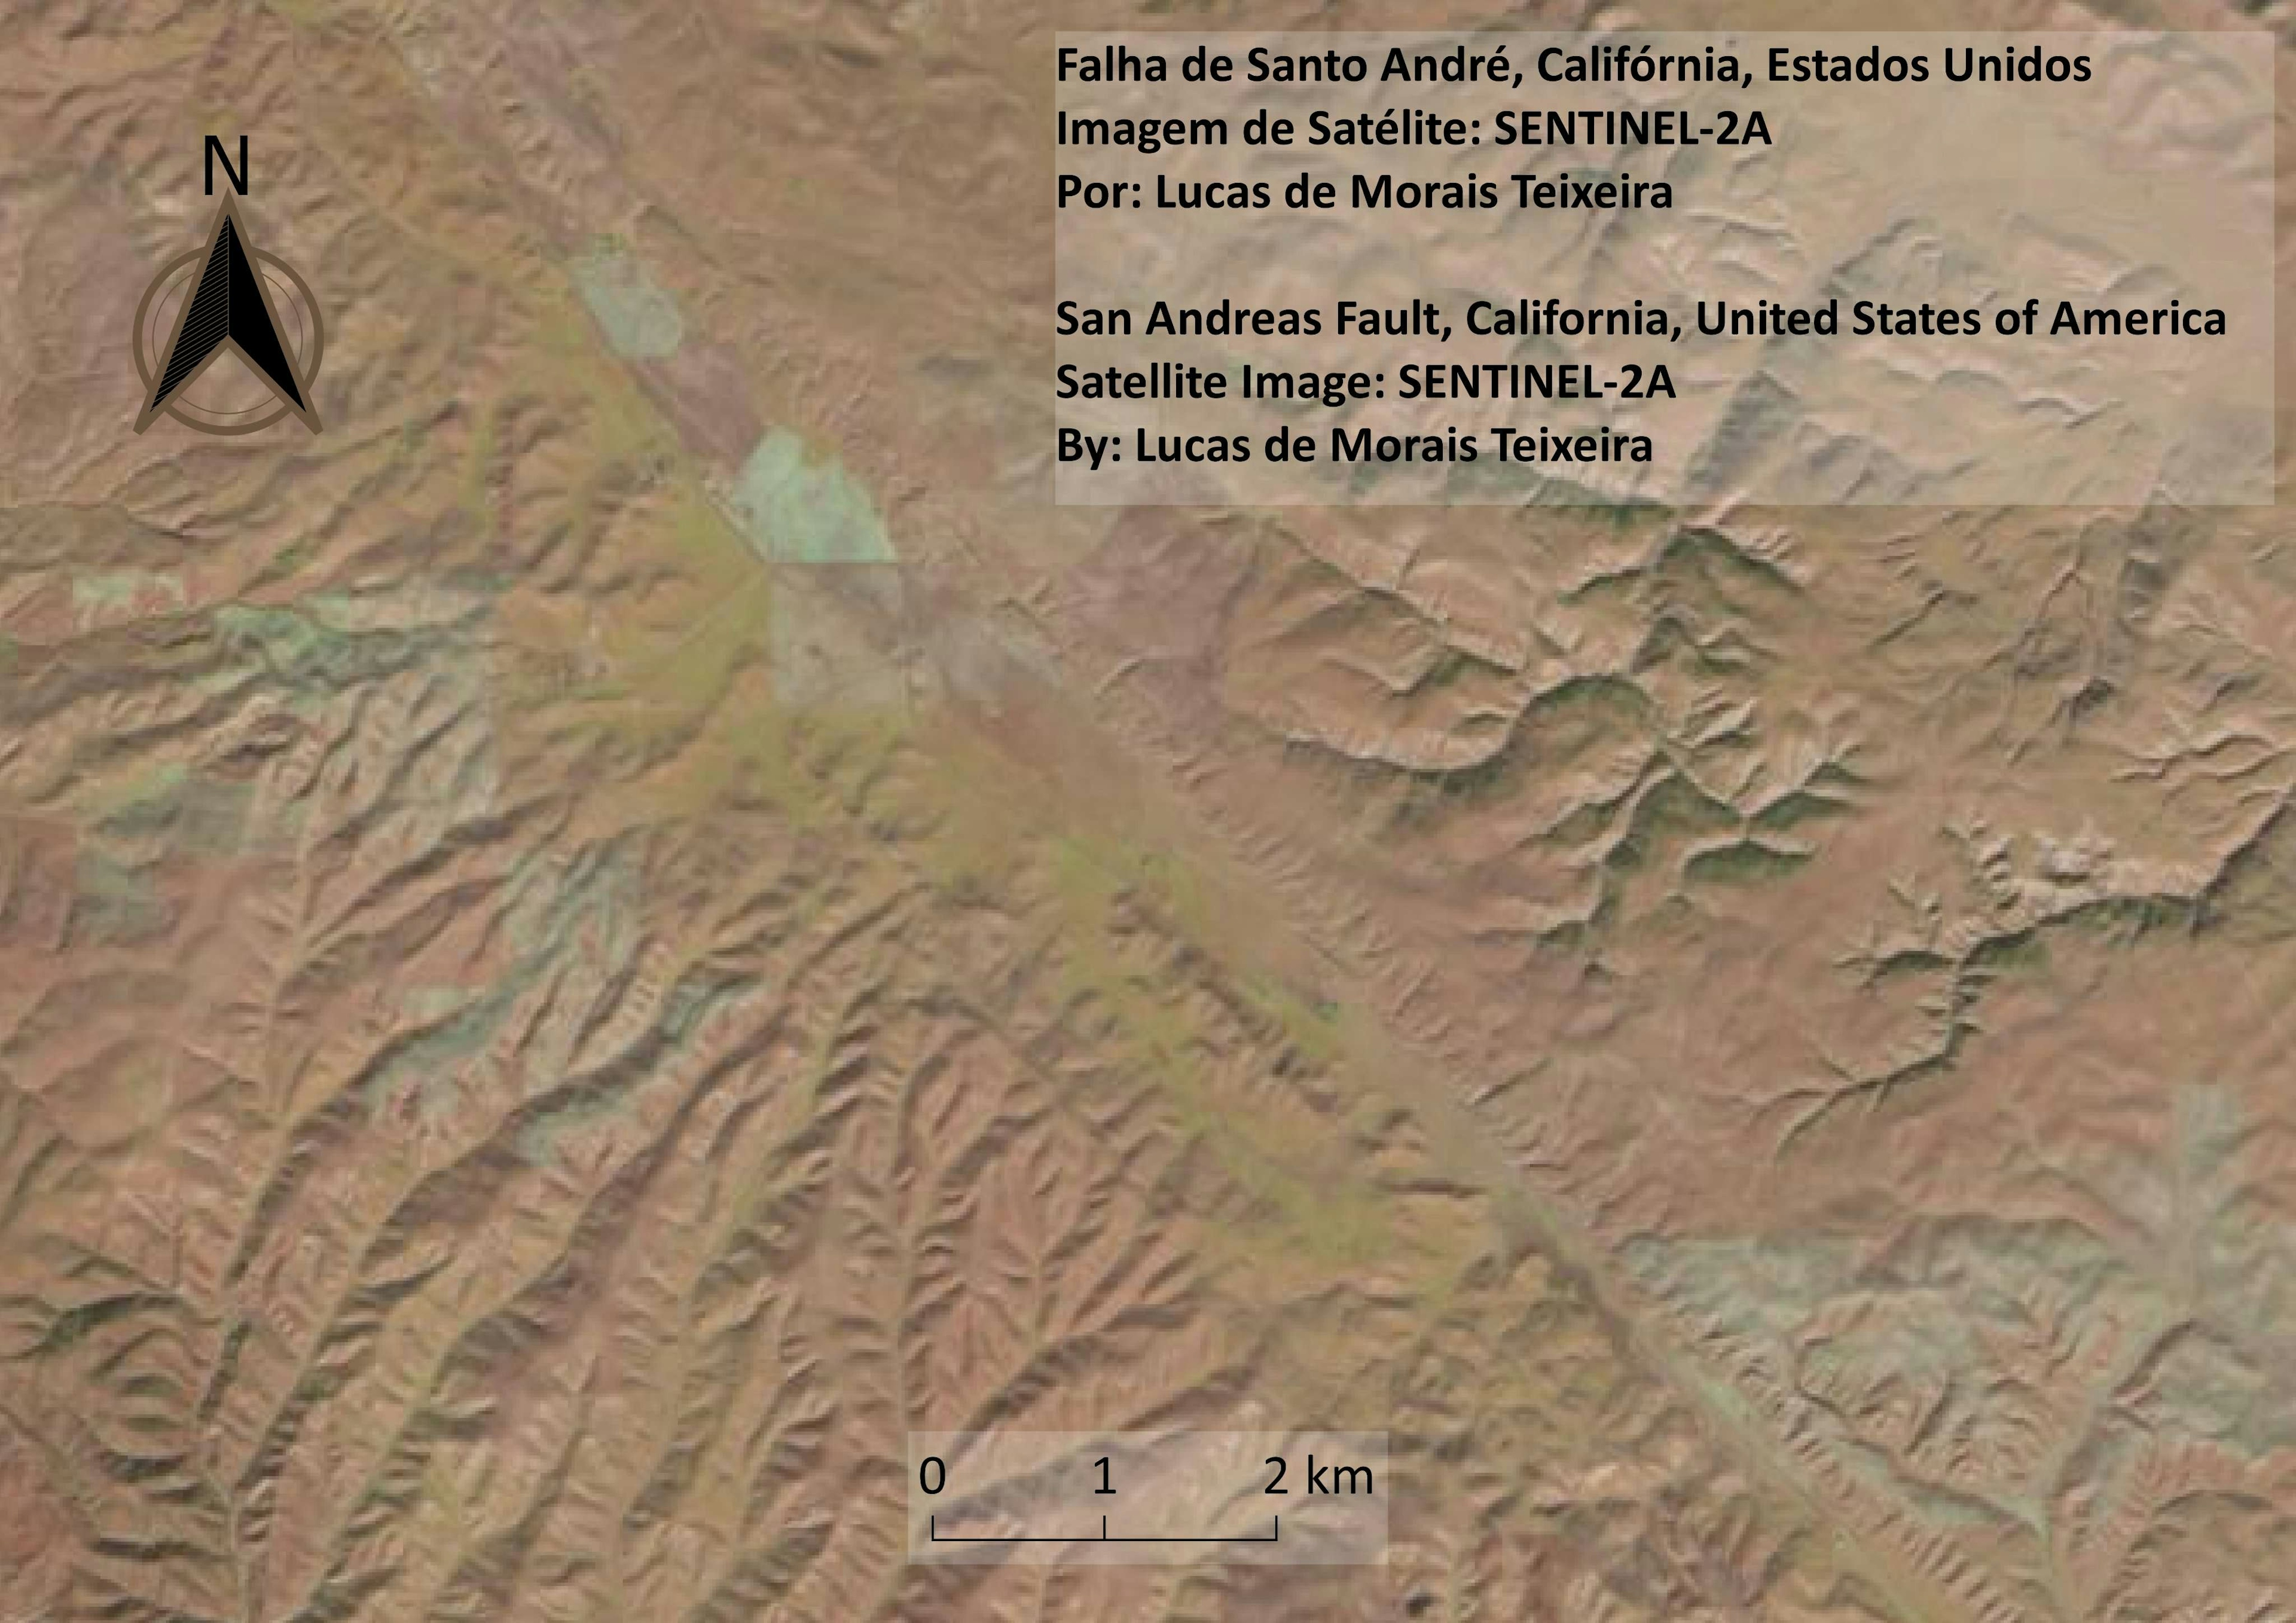 Falha de San Andreas, Califórnia, EUA